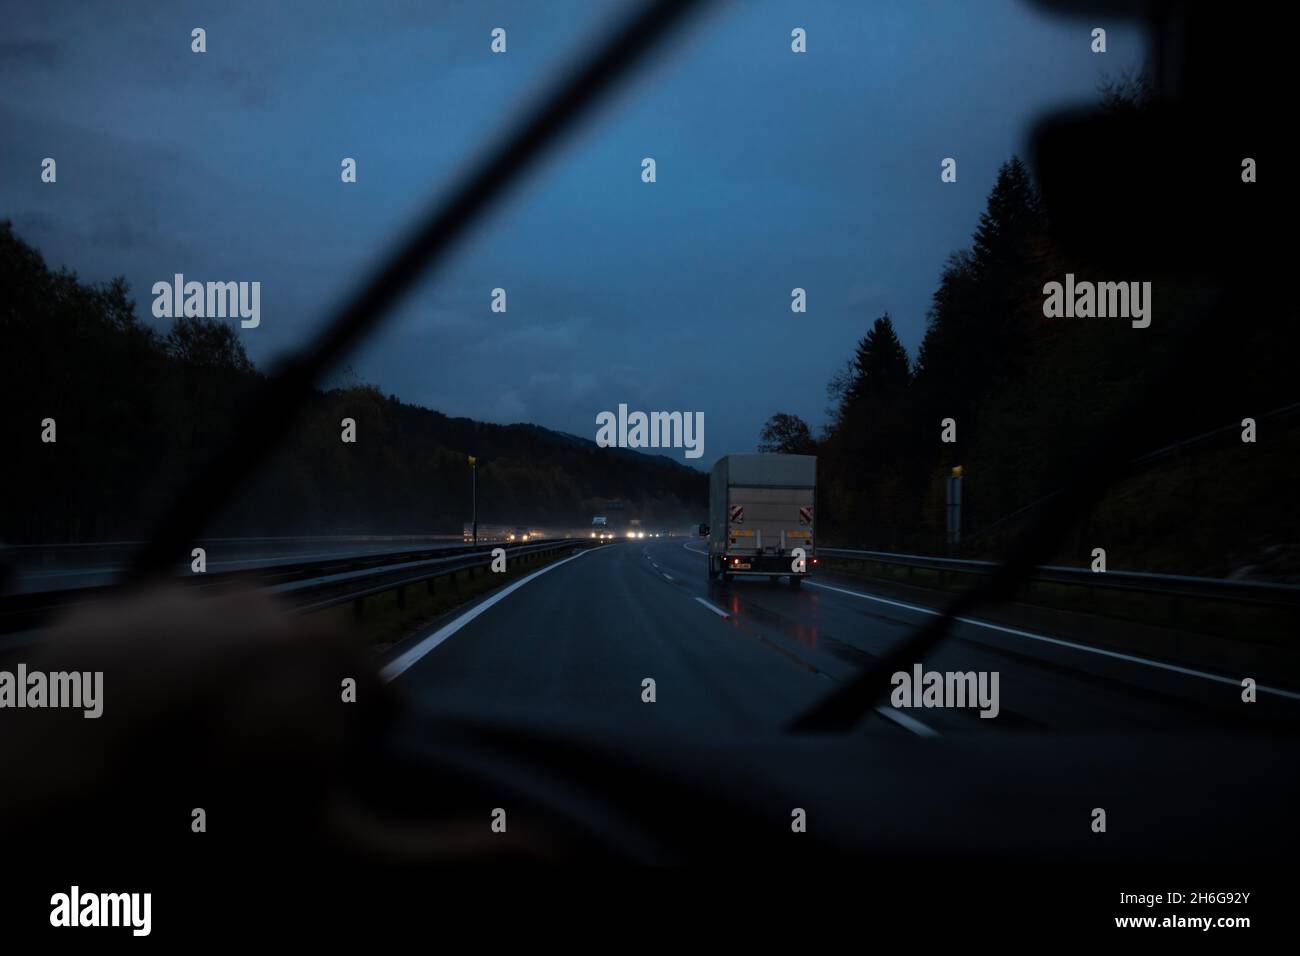 la guida notturna mostra una scarsa visibilità in prima persona Foto Stock